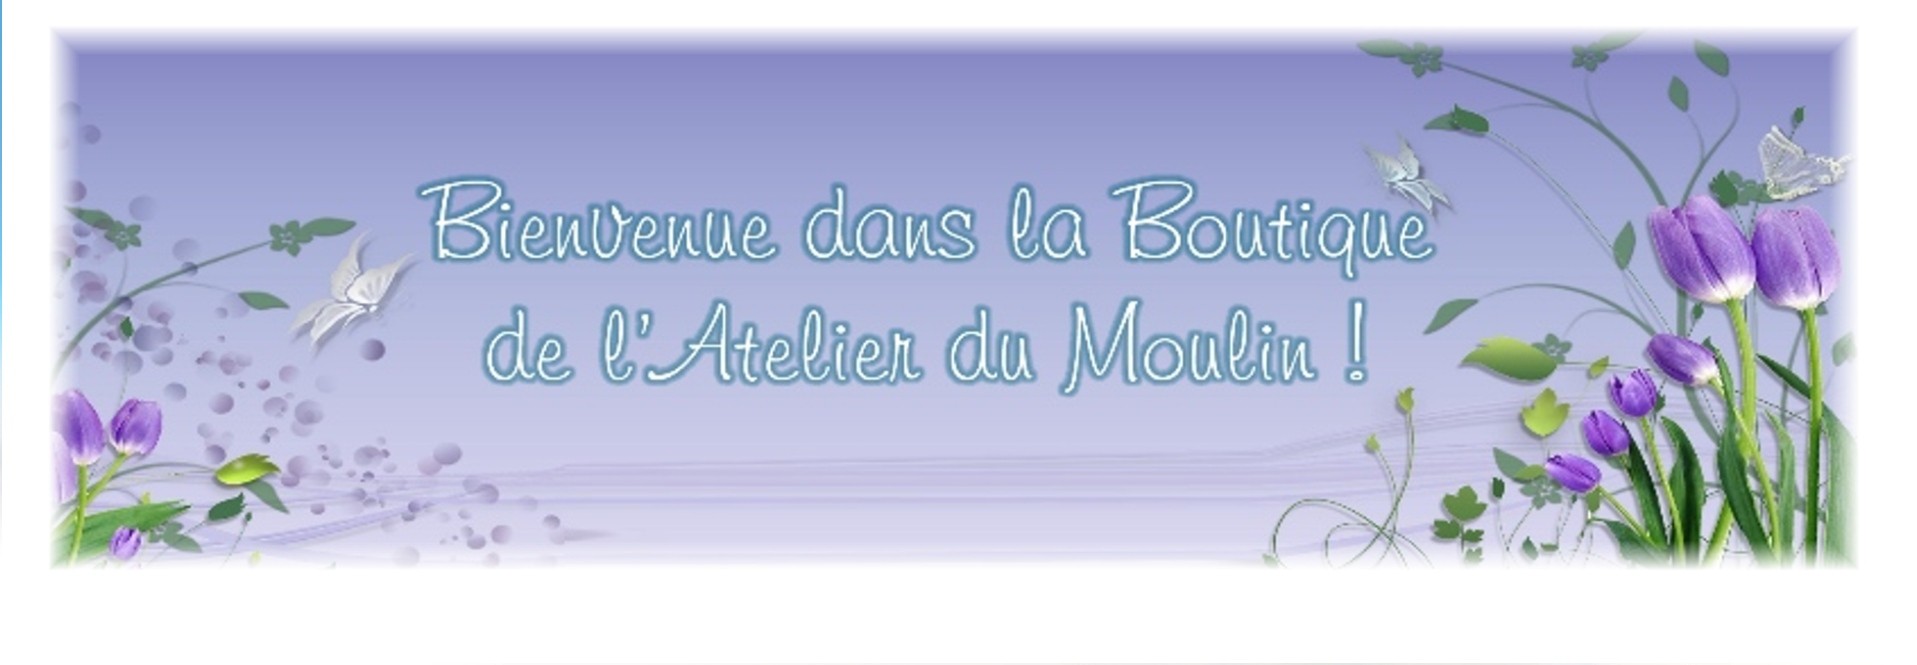 BIENVENUE DANS LA NOUVELLE BOUTIQUE DE L'ATELIER DU MOULIN !